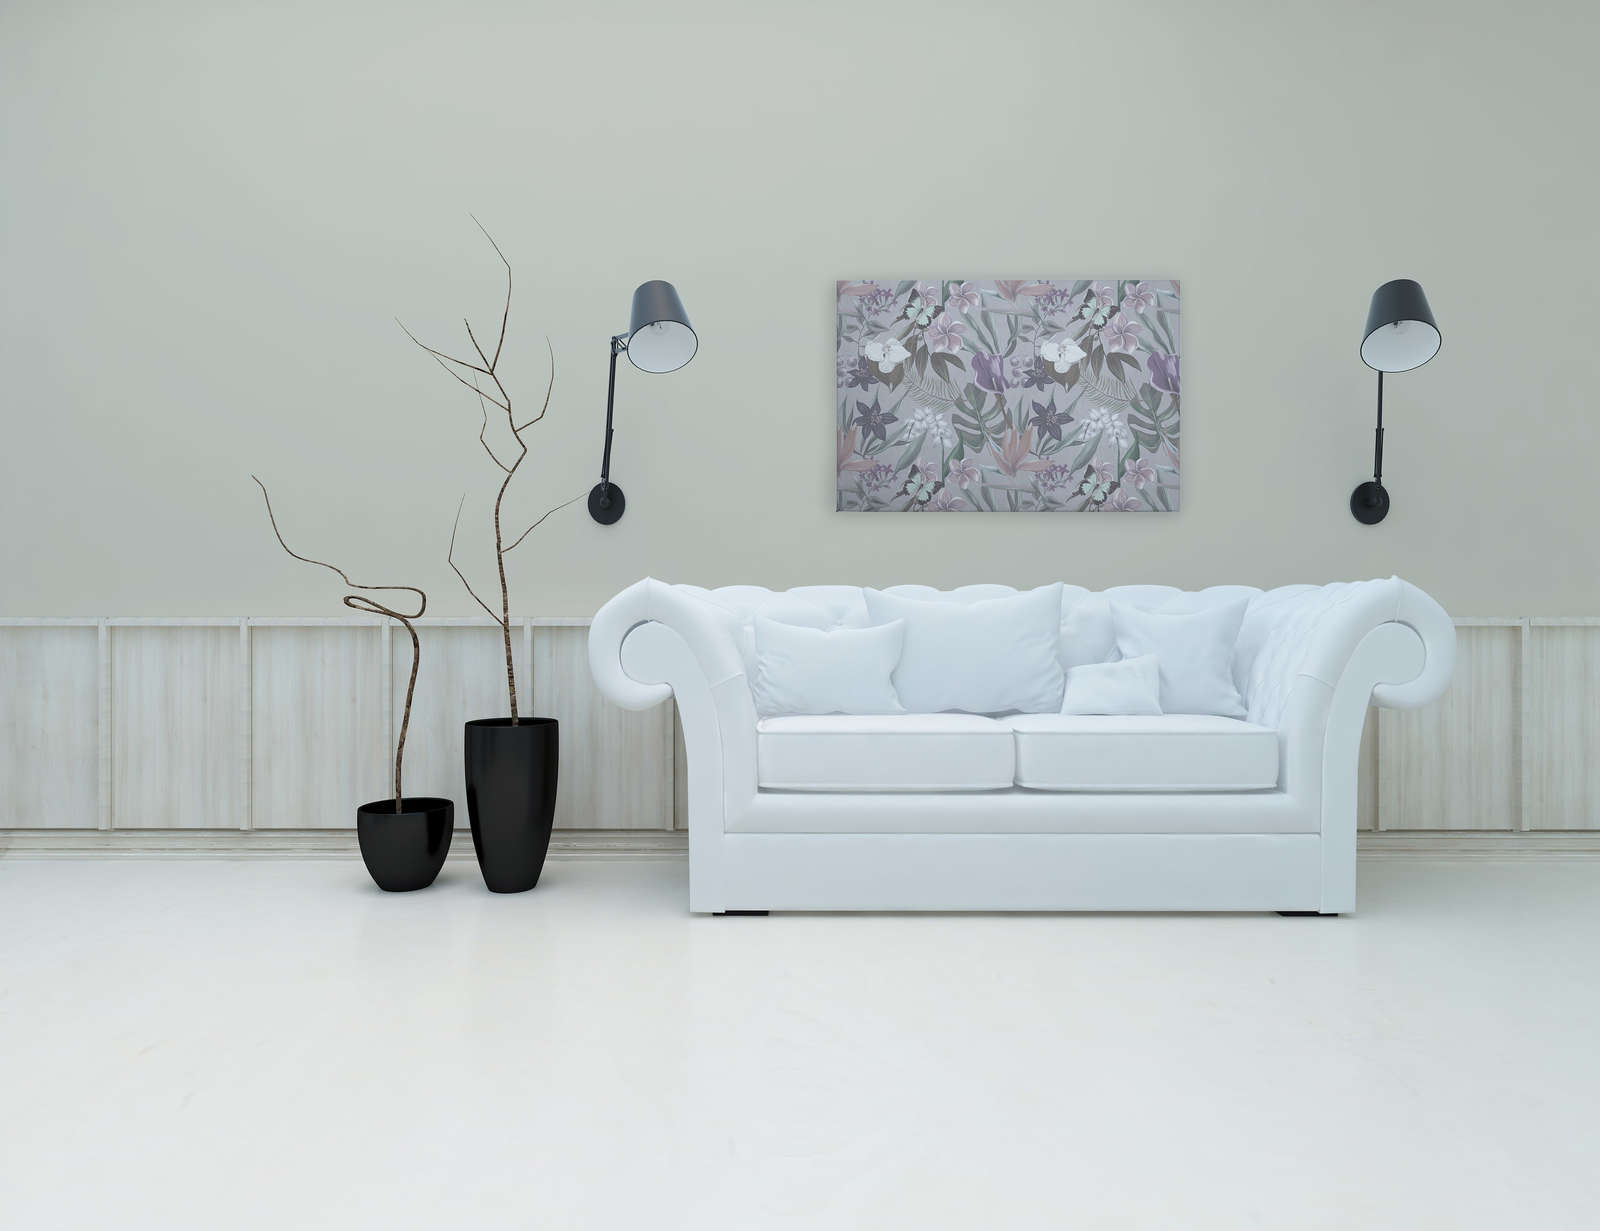             Toile florale jungle dessinée | rose, blanc - 0,90 m x 0,60 m
        